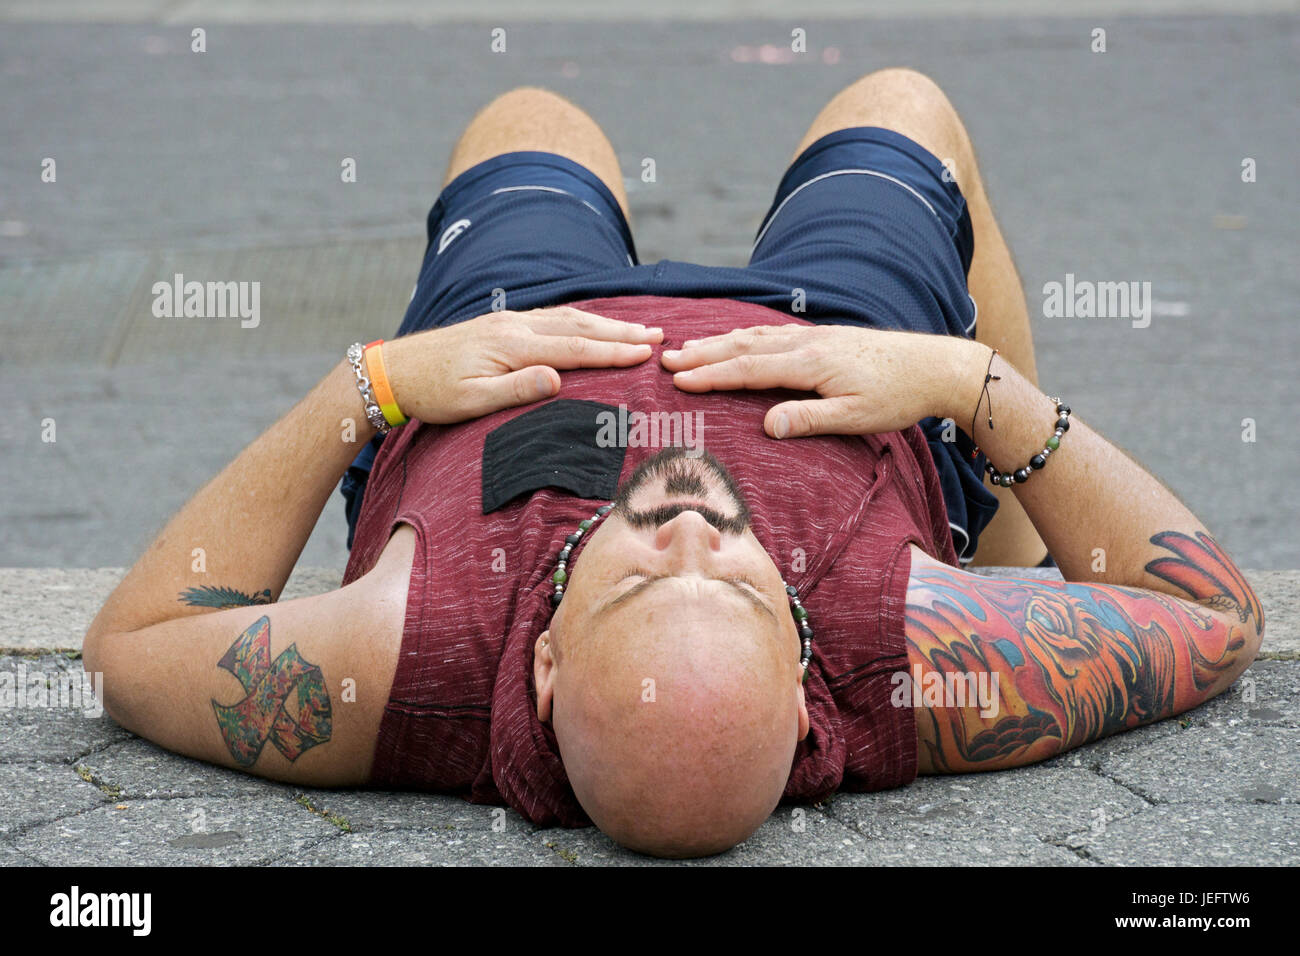 Foto eines ruhenden Menschen mit Tattoos trug eine Tank-Top aus einem ungewöhnlichen Blickwinkel fotografiert. Stockfoto